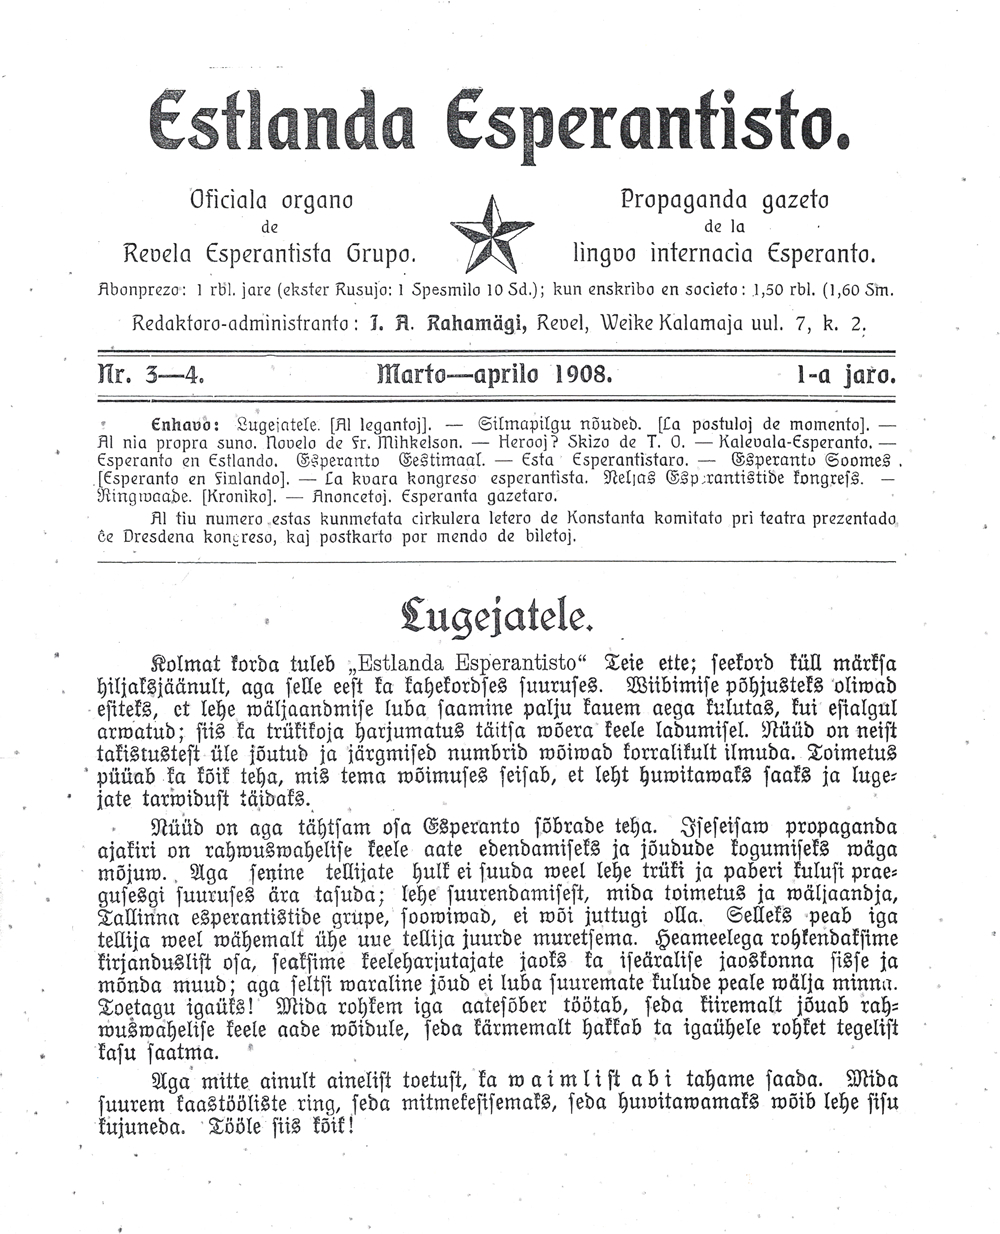 Журнал «Estlanda Esperantisto» – печатный орган эстонских эсперантистов